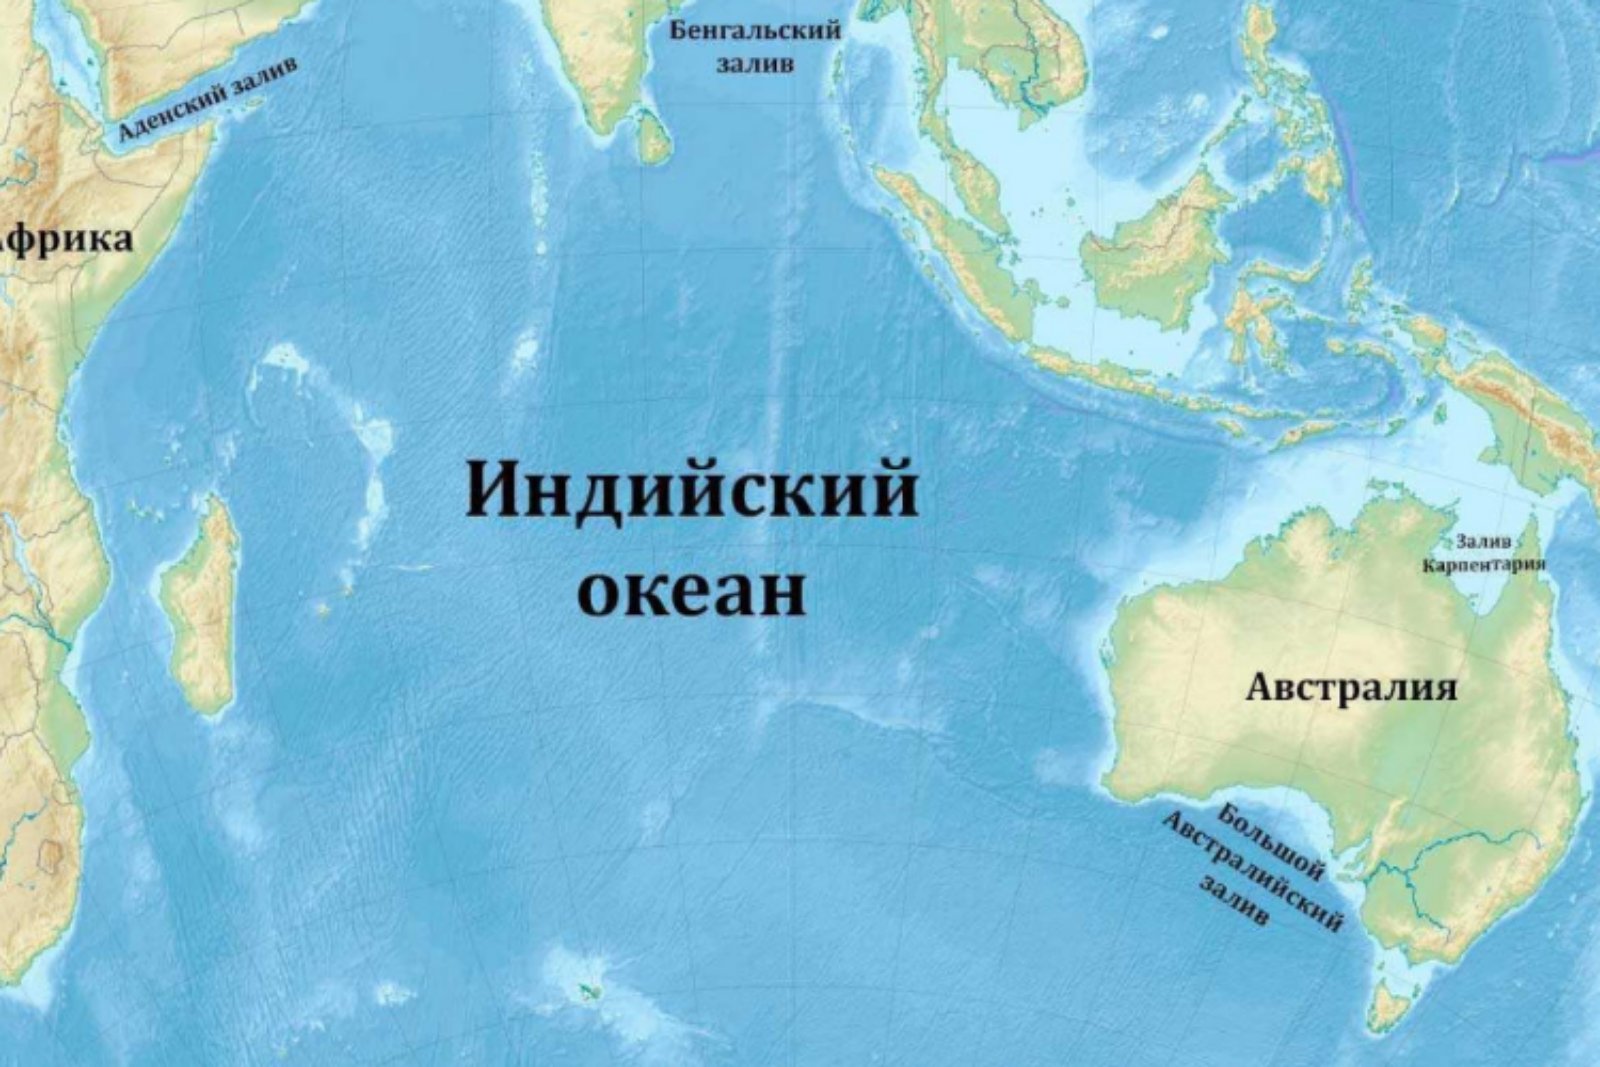 Какой полуостров омывается водами тихого океана. Оманский залив на карте индийского океана. Заливы и проливы индийского океана на карте. Индийский океан на карте. Кварта индийского океана.